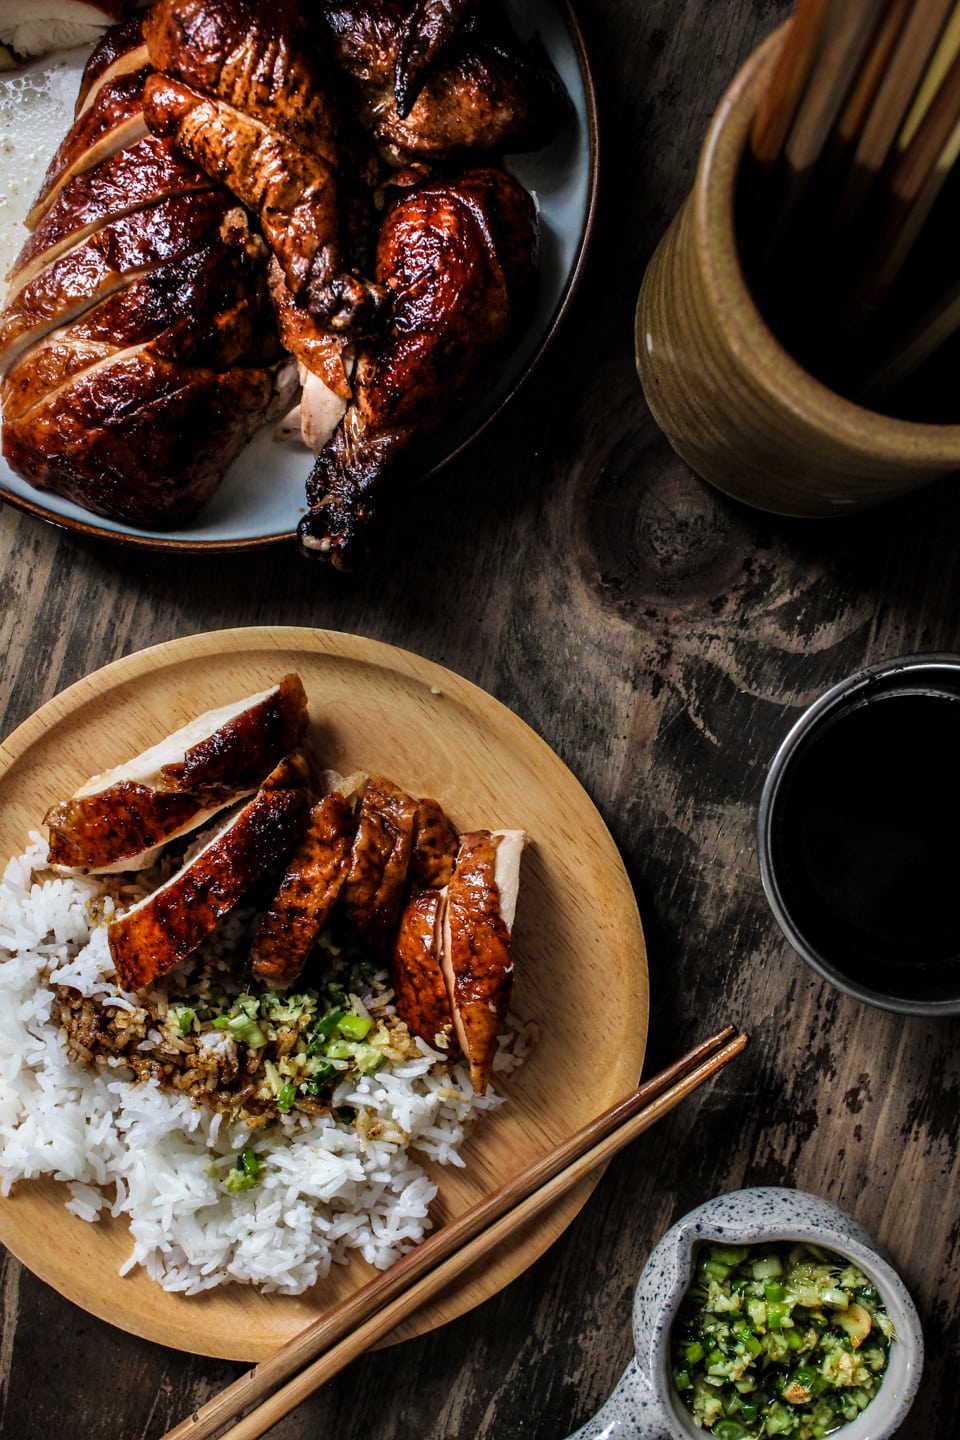 米と生姜のネギソースを上にしたプレートの上に北京鶏を提供しています